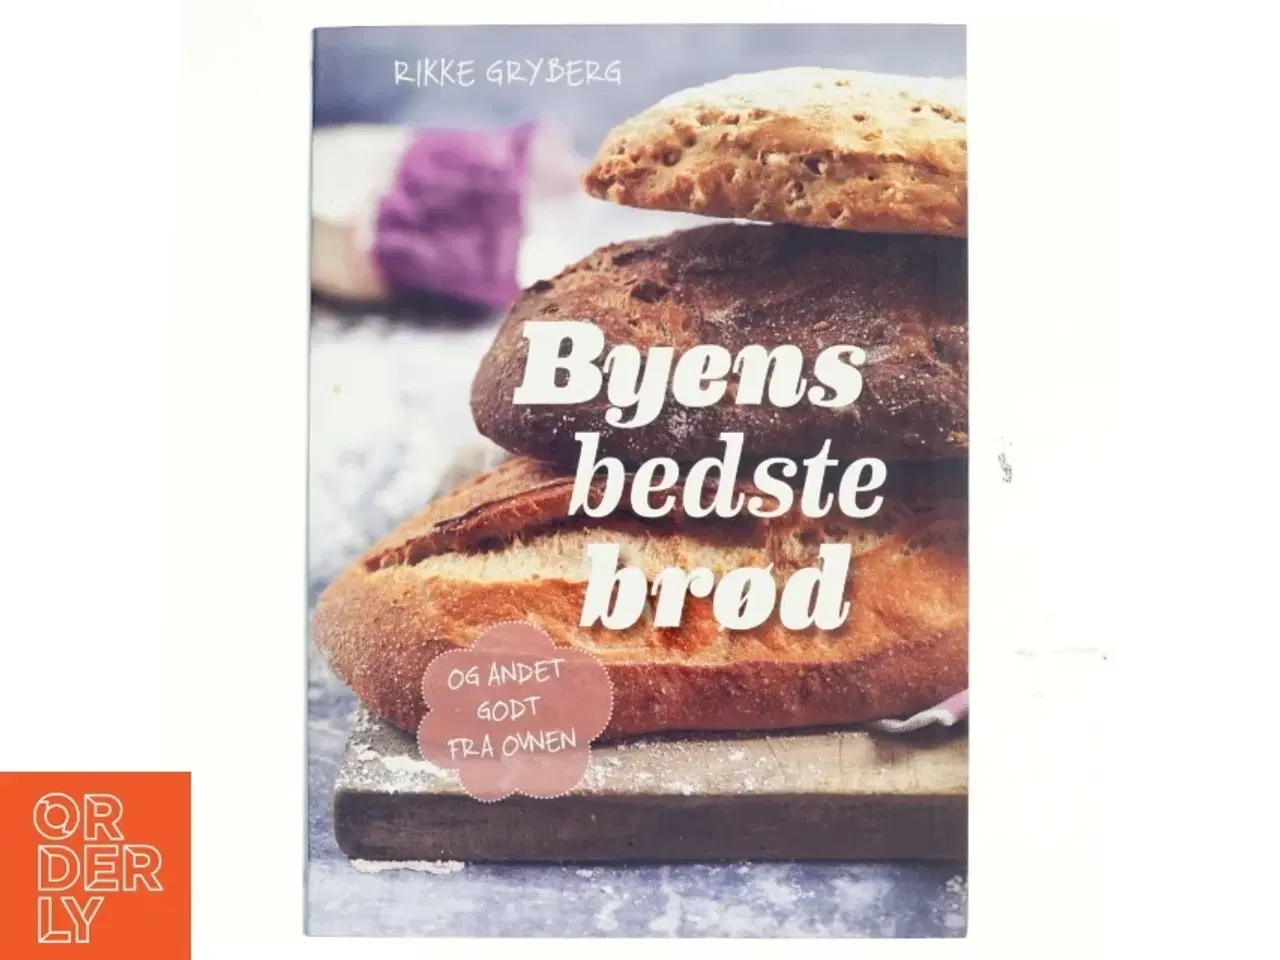 Billede 1 - Byens bedste brød : og andet godt fra ovnen af Rikke Gryberg (Bog)